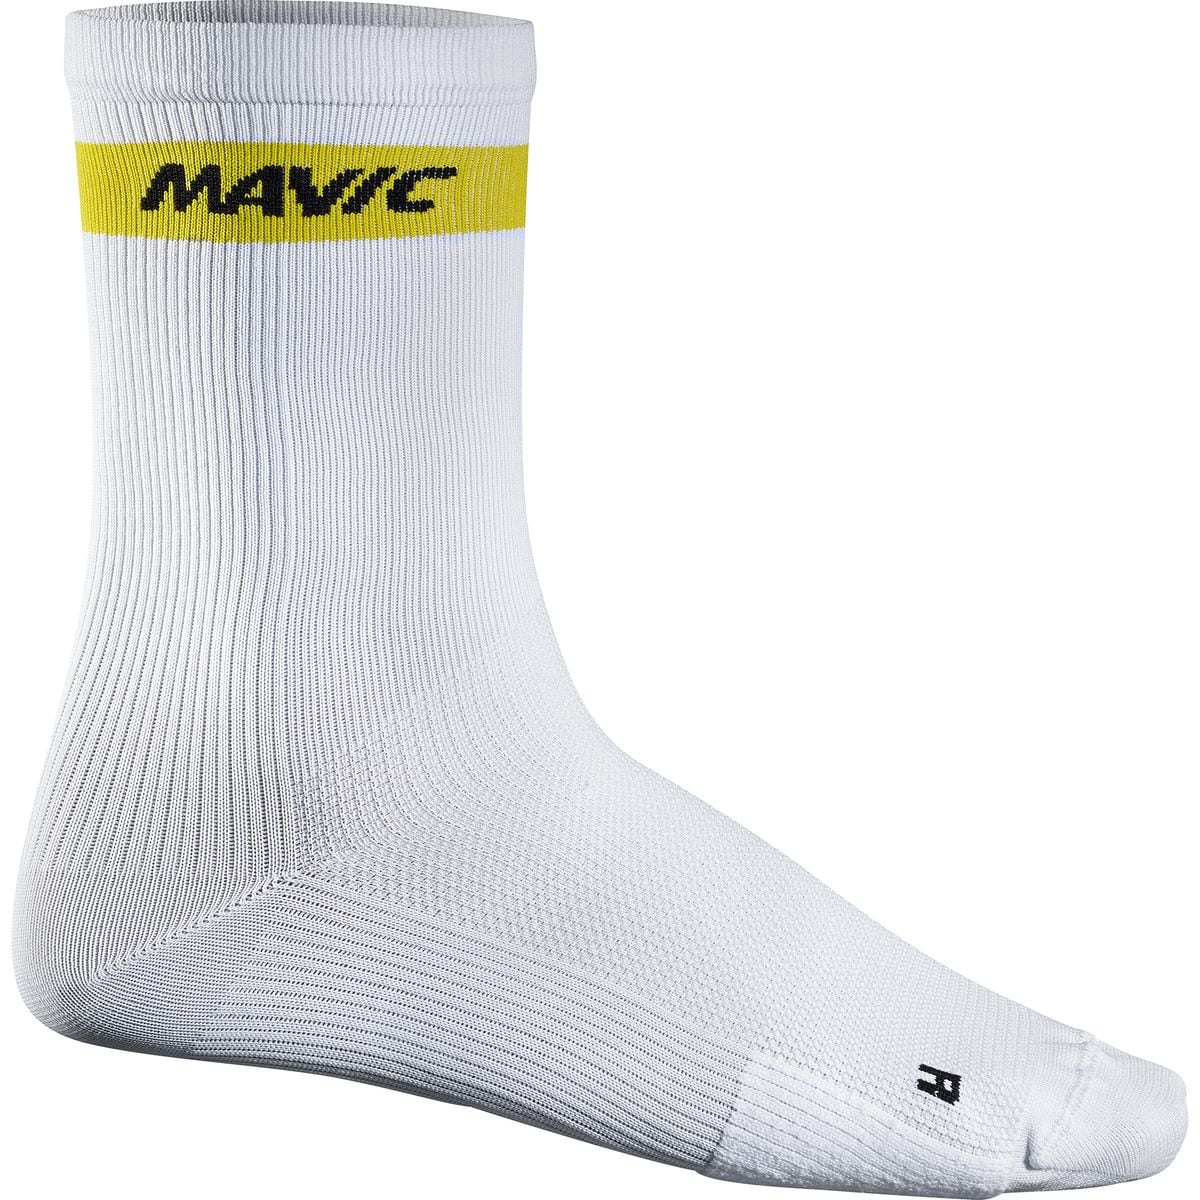 Mavic Cosmic High Socks - Men's